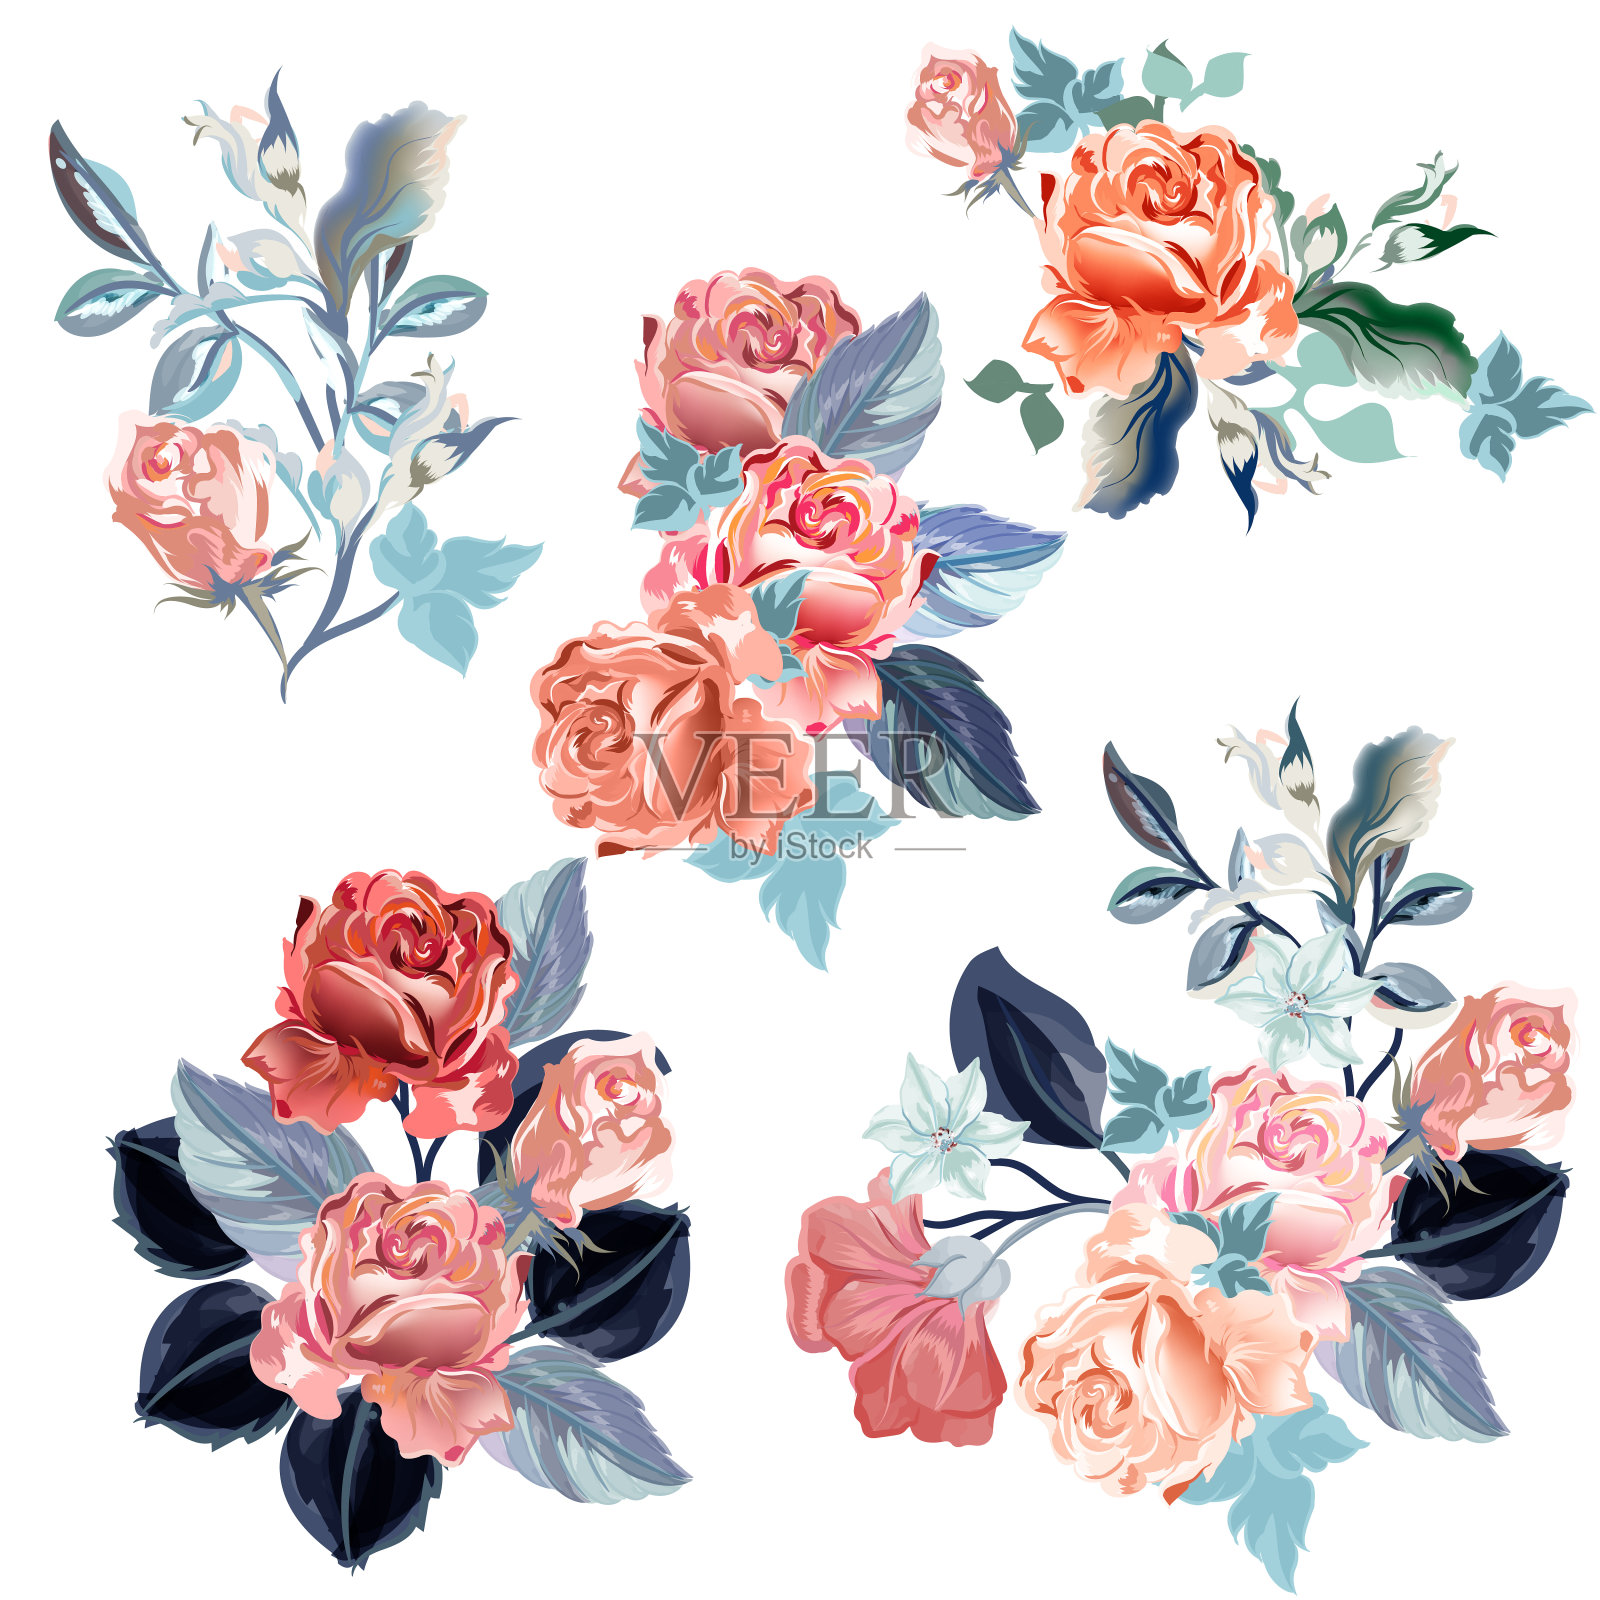 一套矢量水彩玫瑰设计插画图片素材